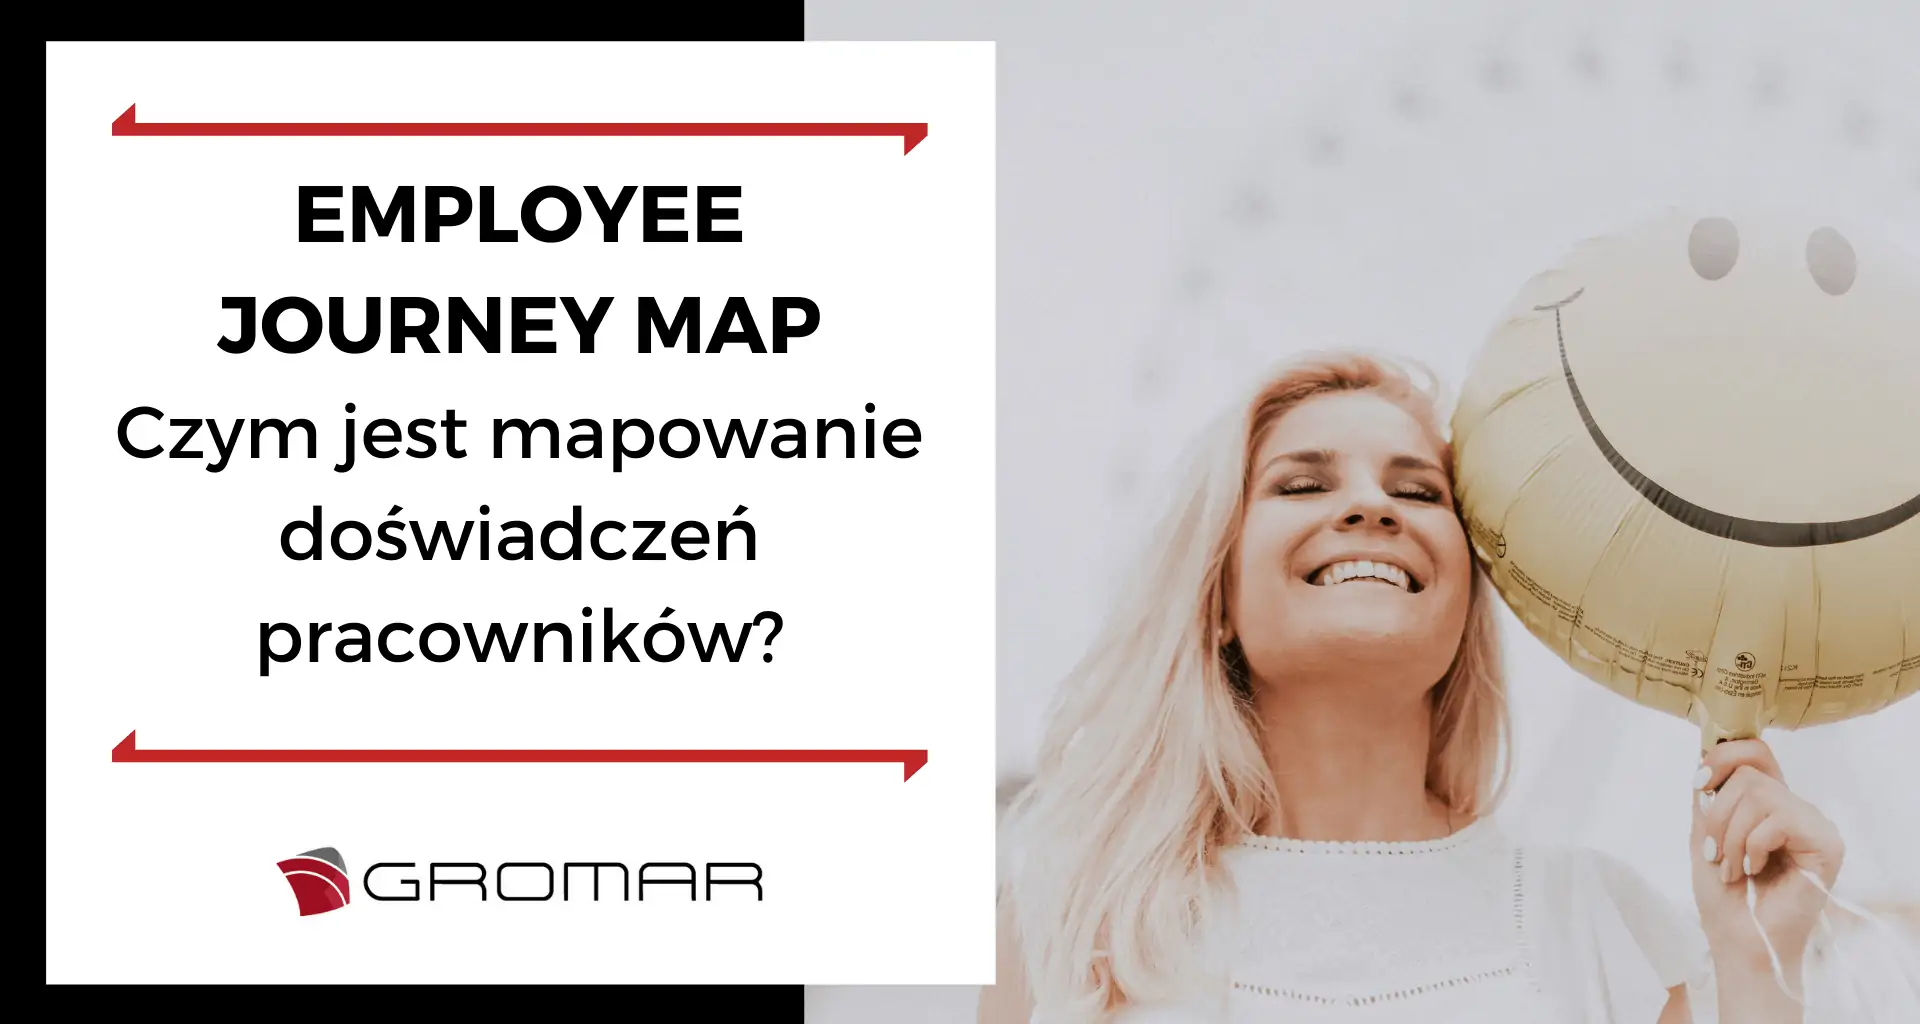 Employee journey map – czym jest mapowanie doświadczeń pracowników?